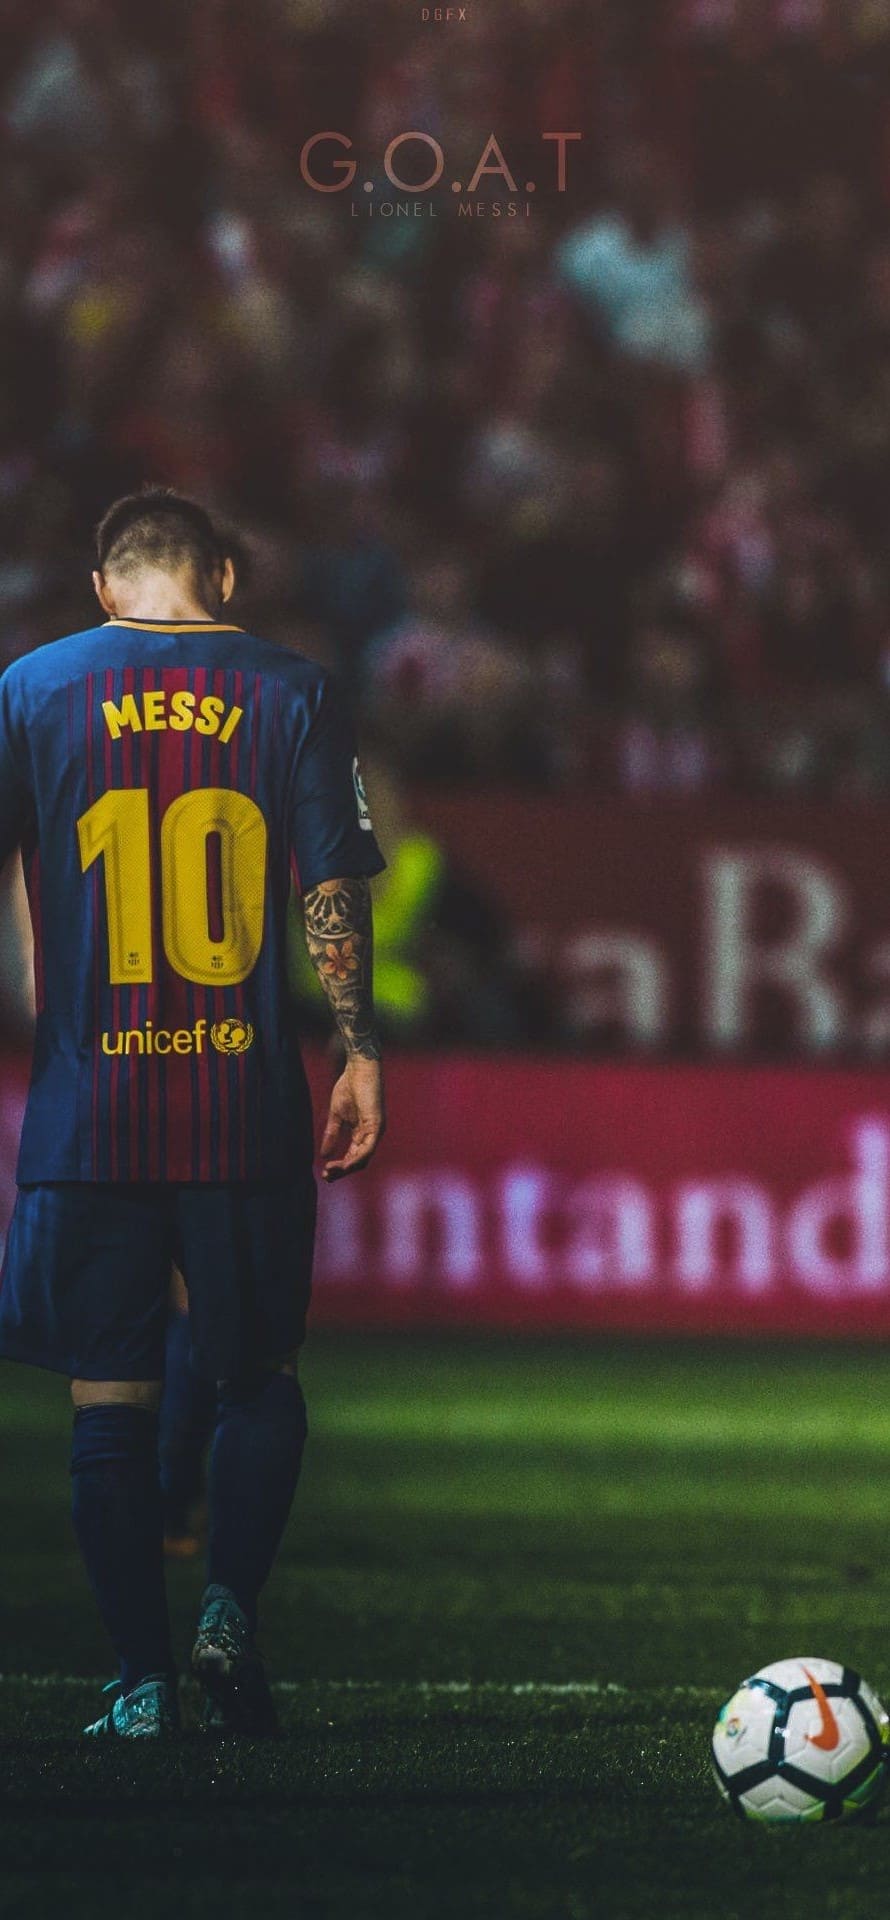 Là fan hâm mộ của Messi, bạn sẽ tìm thấy niềm vui với bức hình nền điện thoại Messi độc đáo này. Bức ảnh nền này sẽ khiến điện thoại của bạn trở nên nổi bật và đặc biệt hơn bao giờ hết. Nó chắc chắn sẽ mang lại cho bạn sự thư giãn và cảm giác hạnh phúc khi nhìn vào điện thoại của mình.